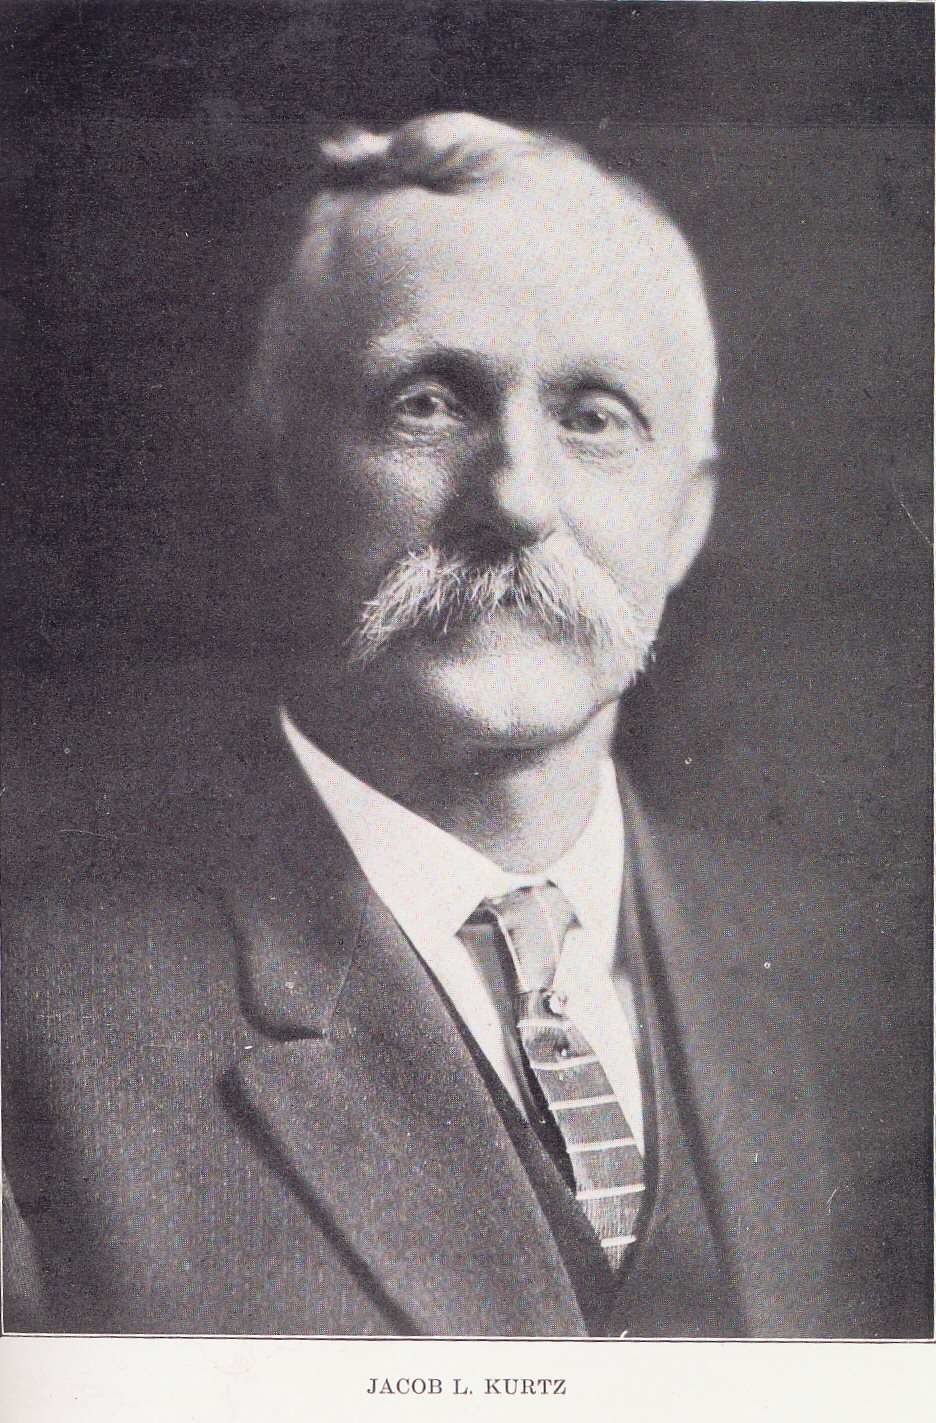 Jacob L. Kurtz